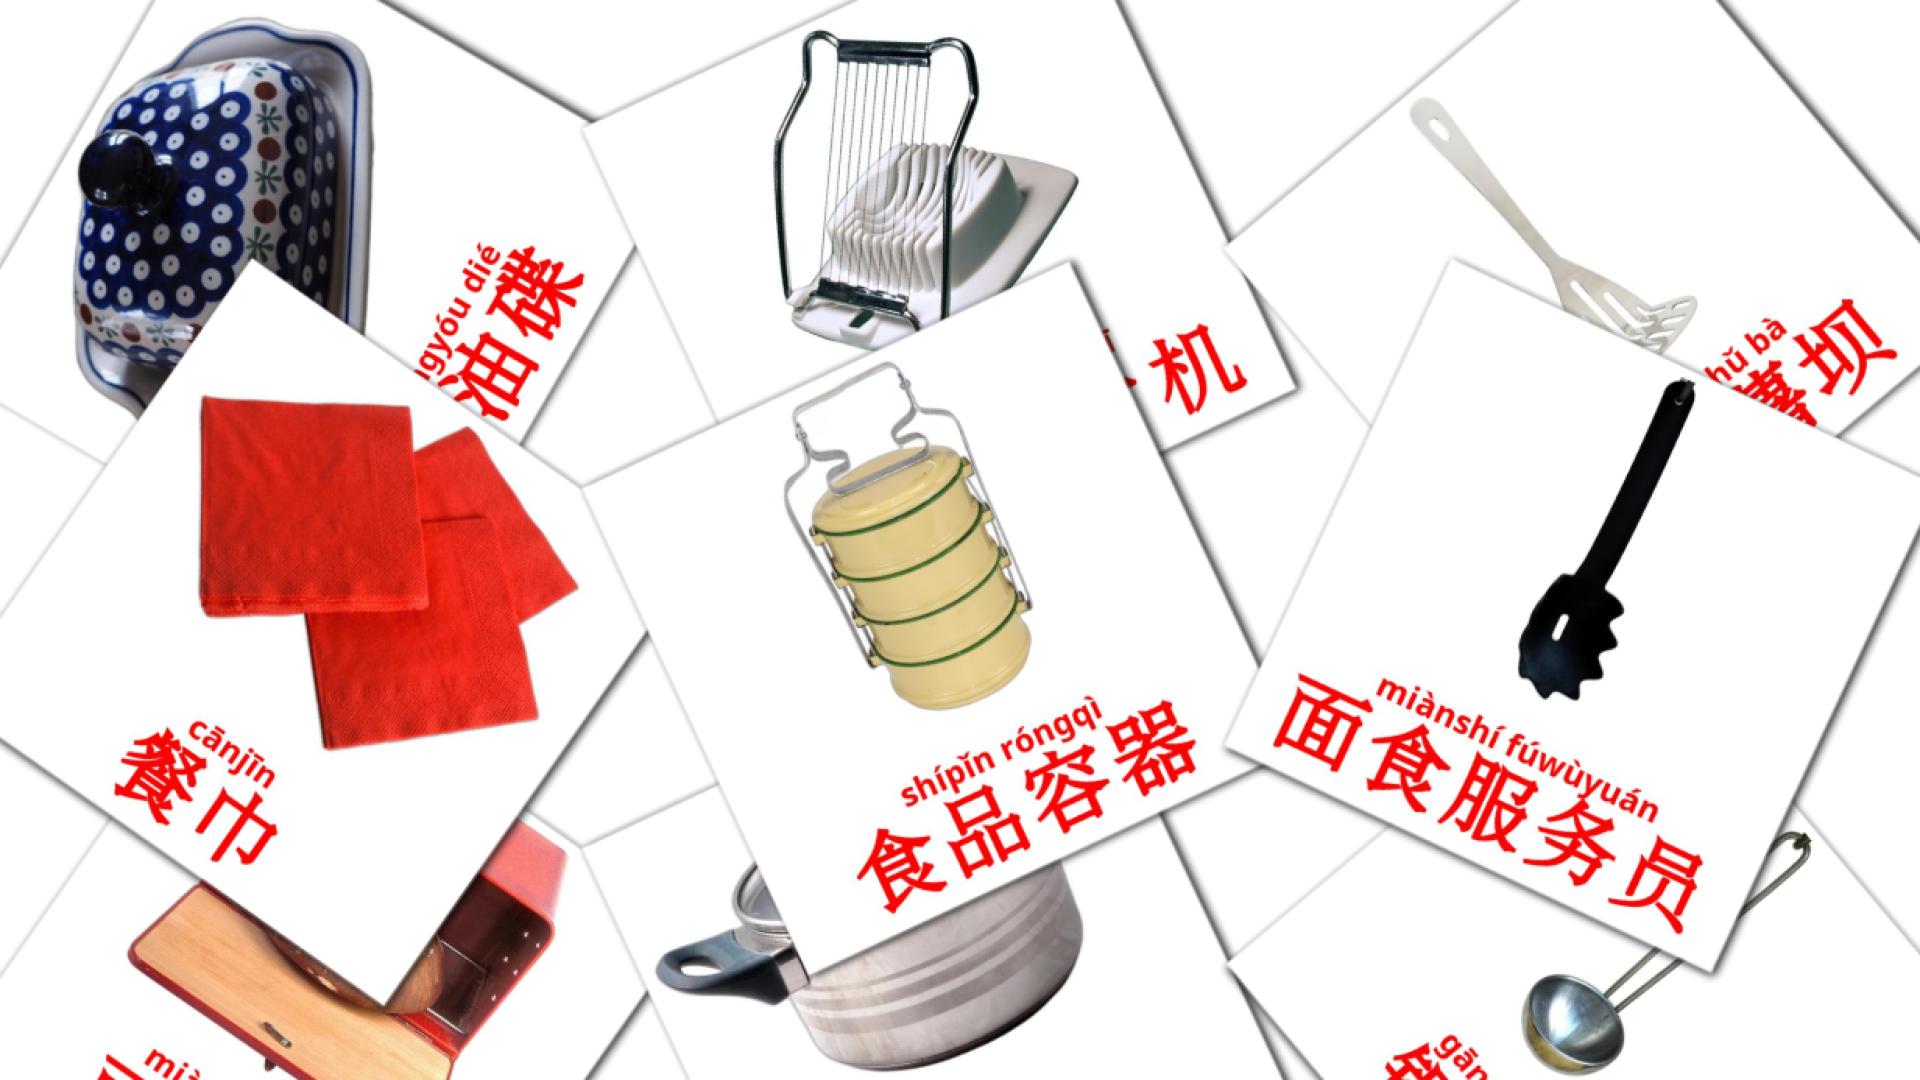 Chinesisch(Vereinfacht) 厨房房间e Vokabelkarteikarten